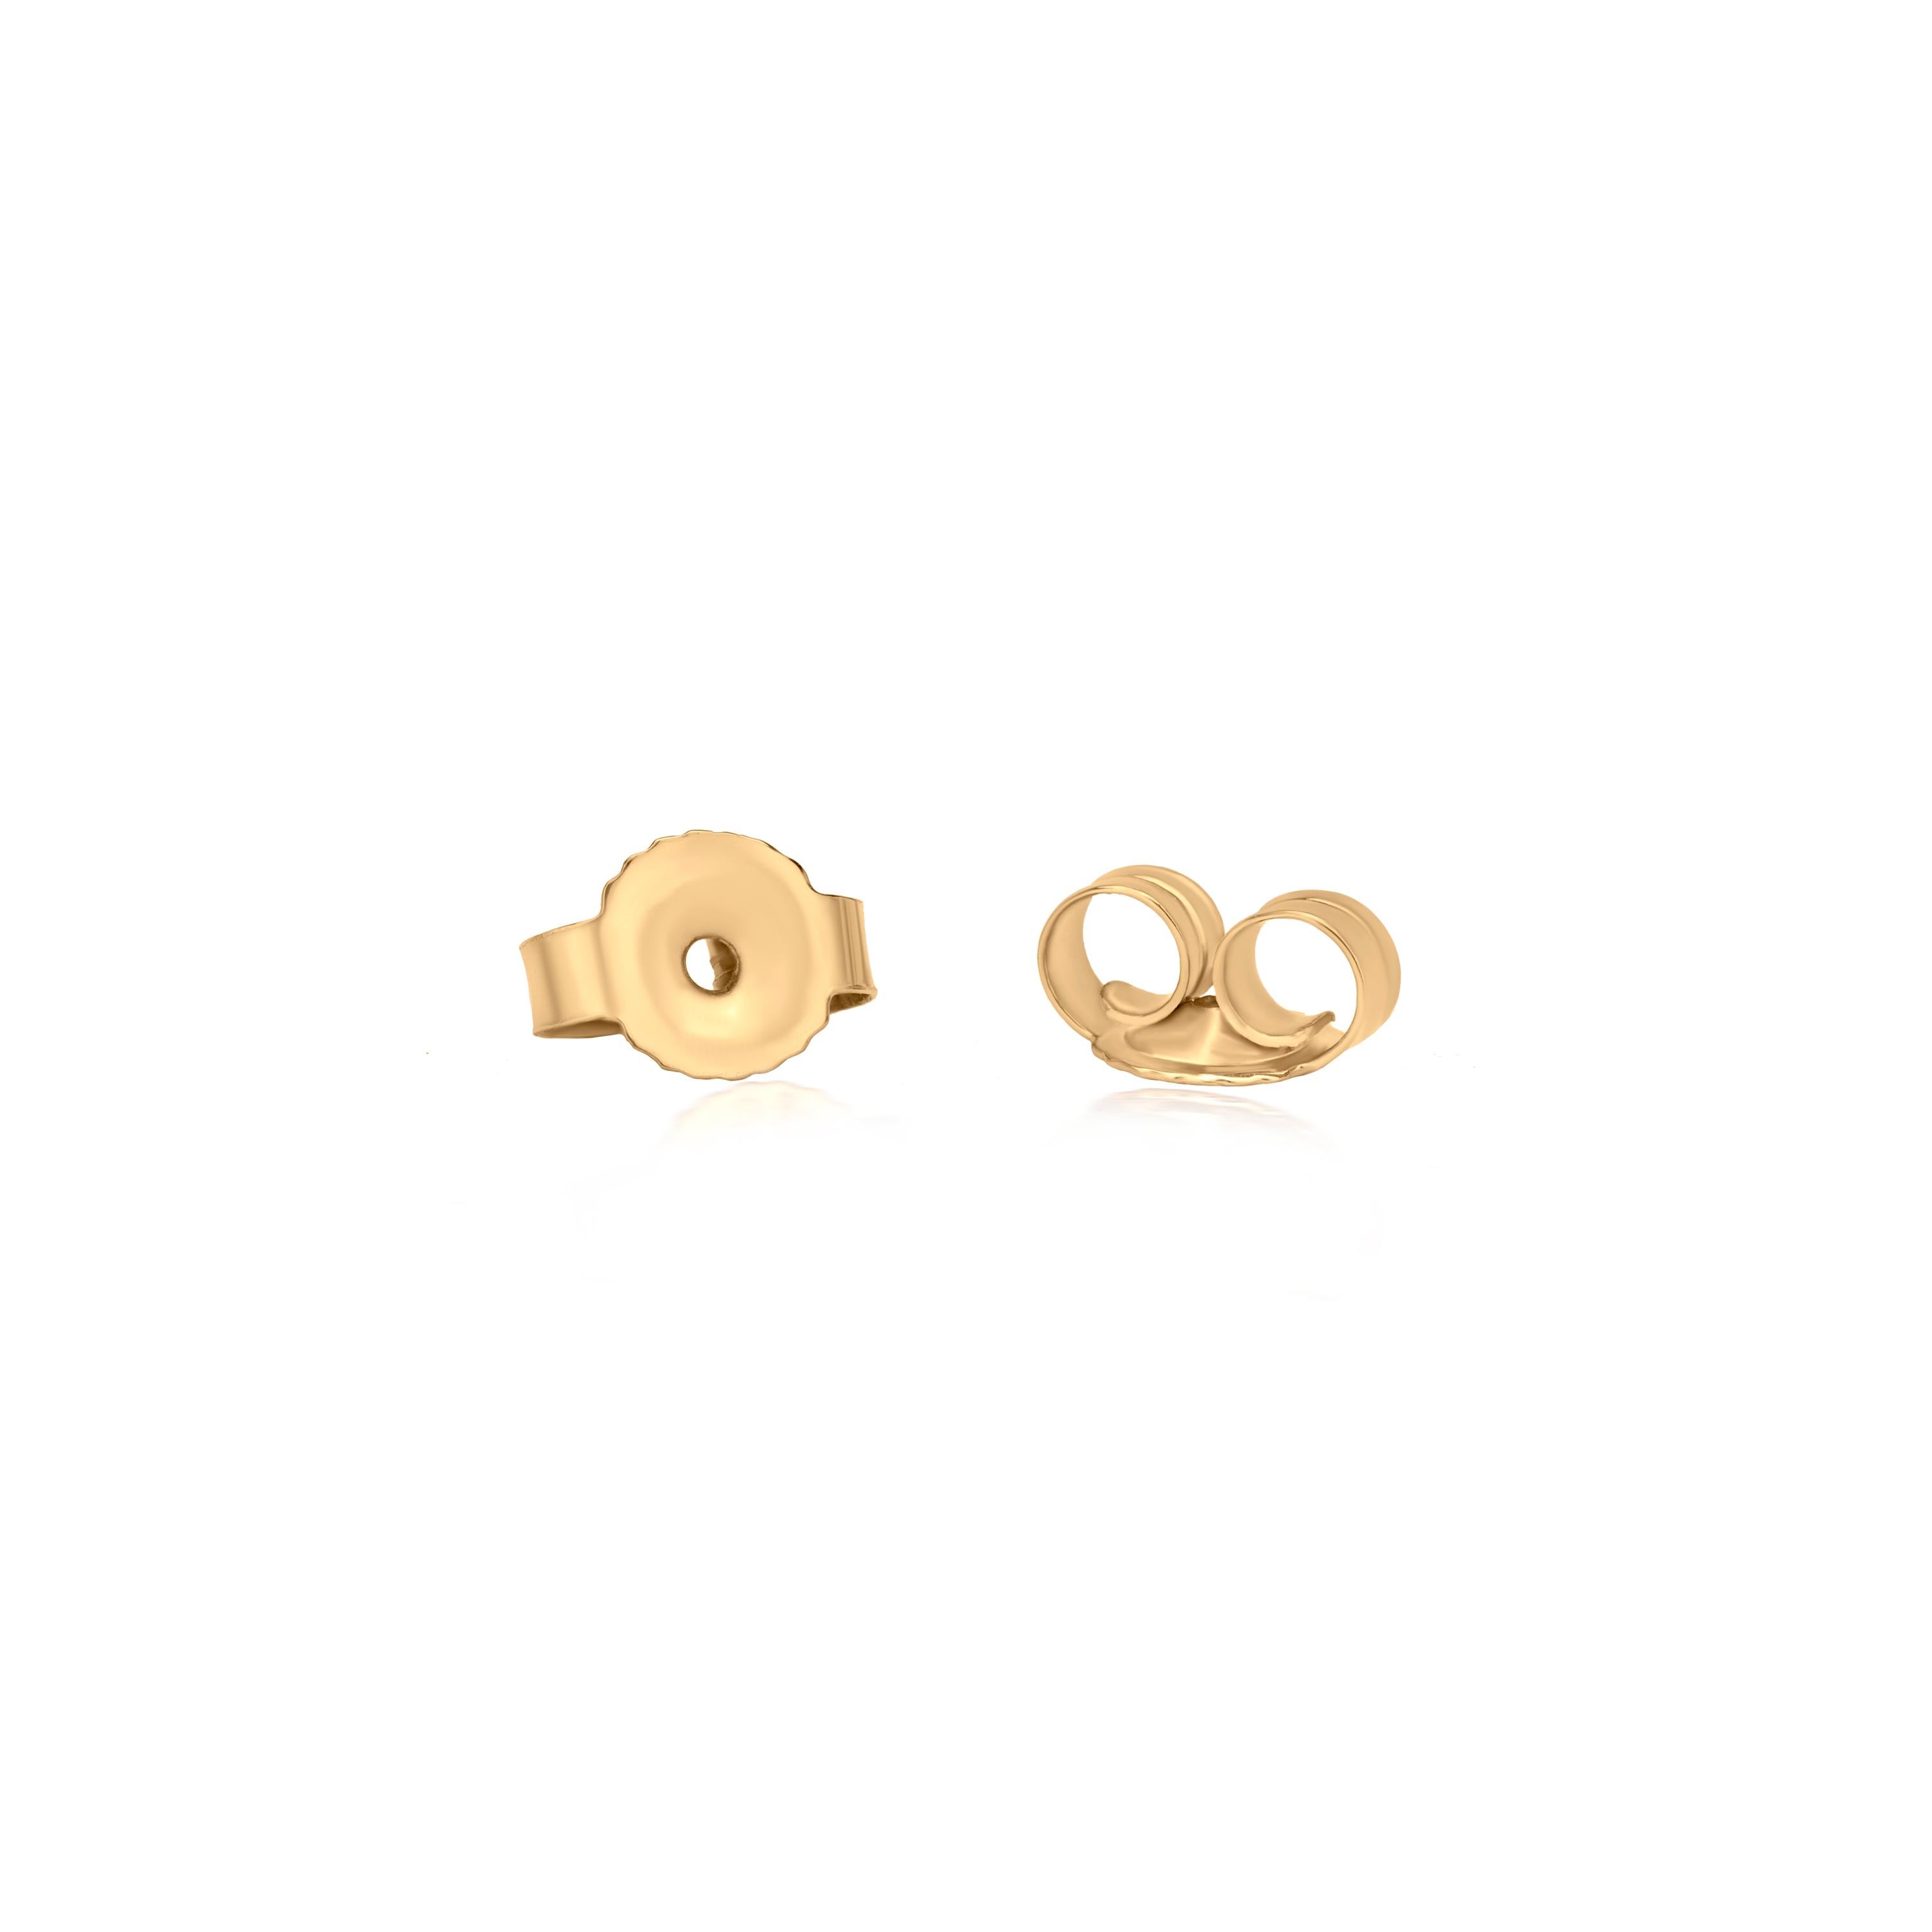 Round Cut Luxle Elephant Diamond Stud Earrings in 18K Yellow Gold